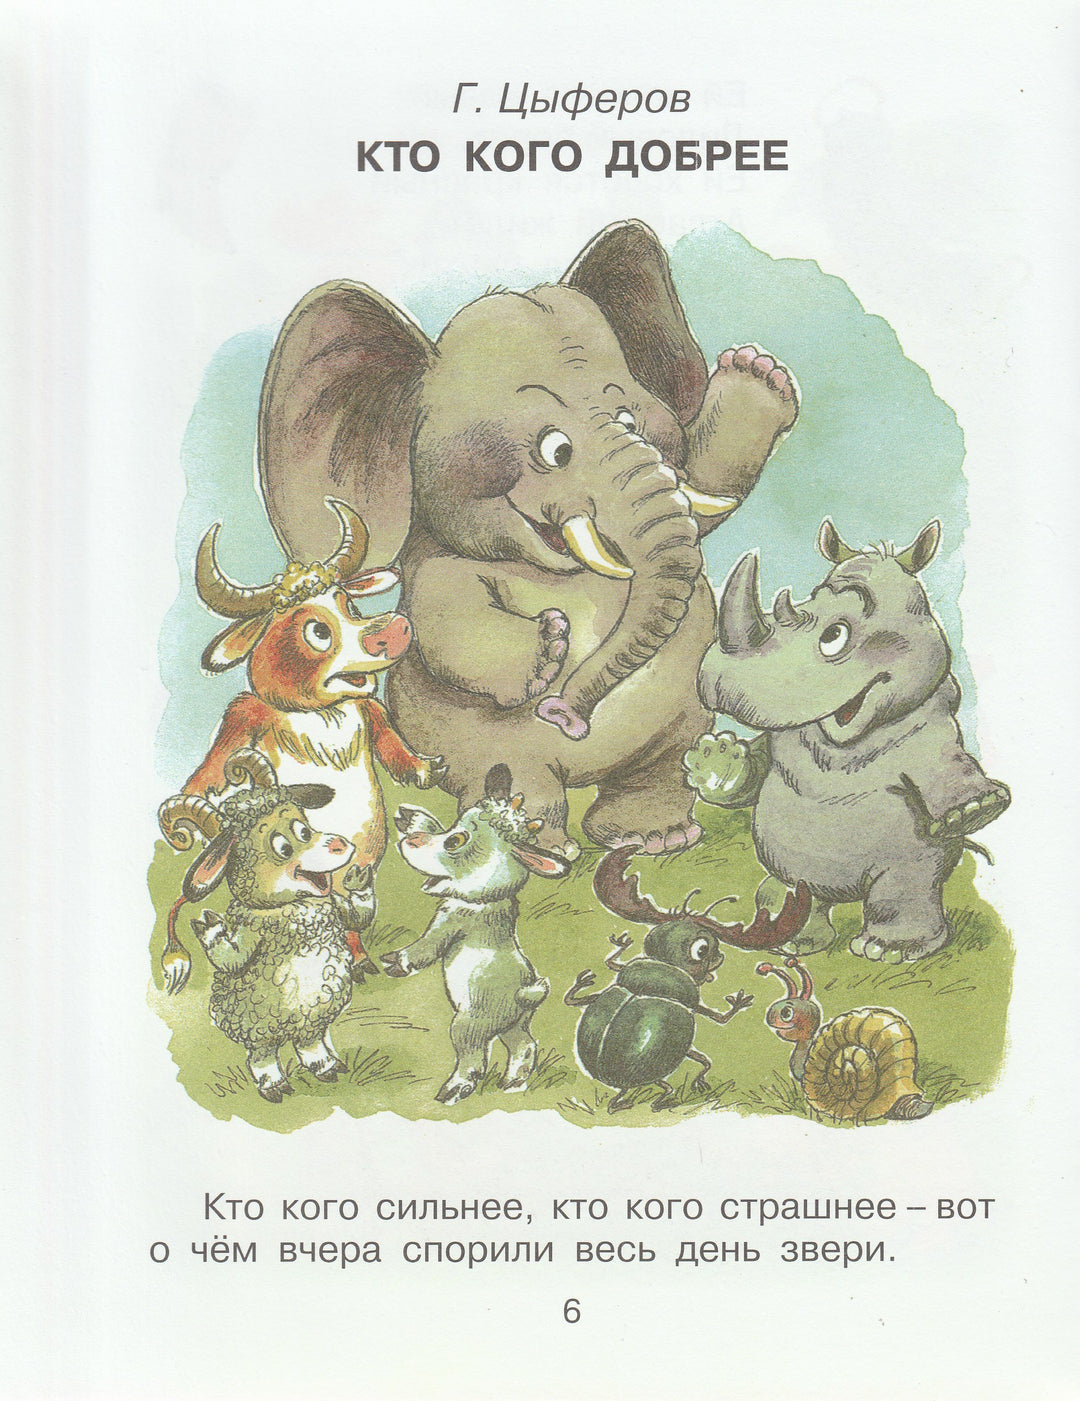 Сказки-малютки для малышек 3-4 года-Сутеев В.-АСТ-Lookomorie